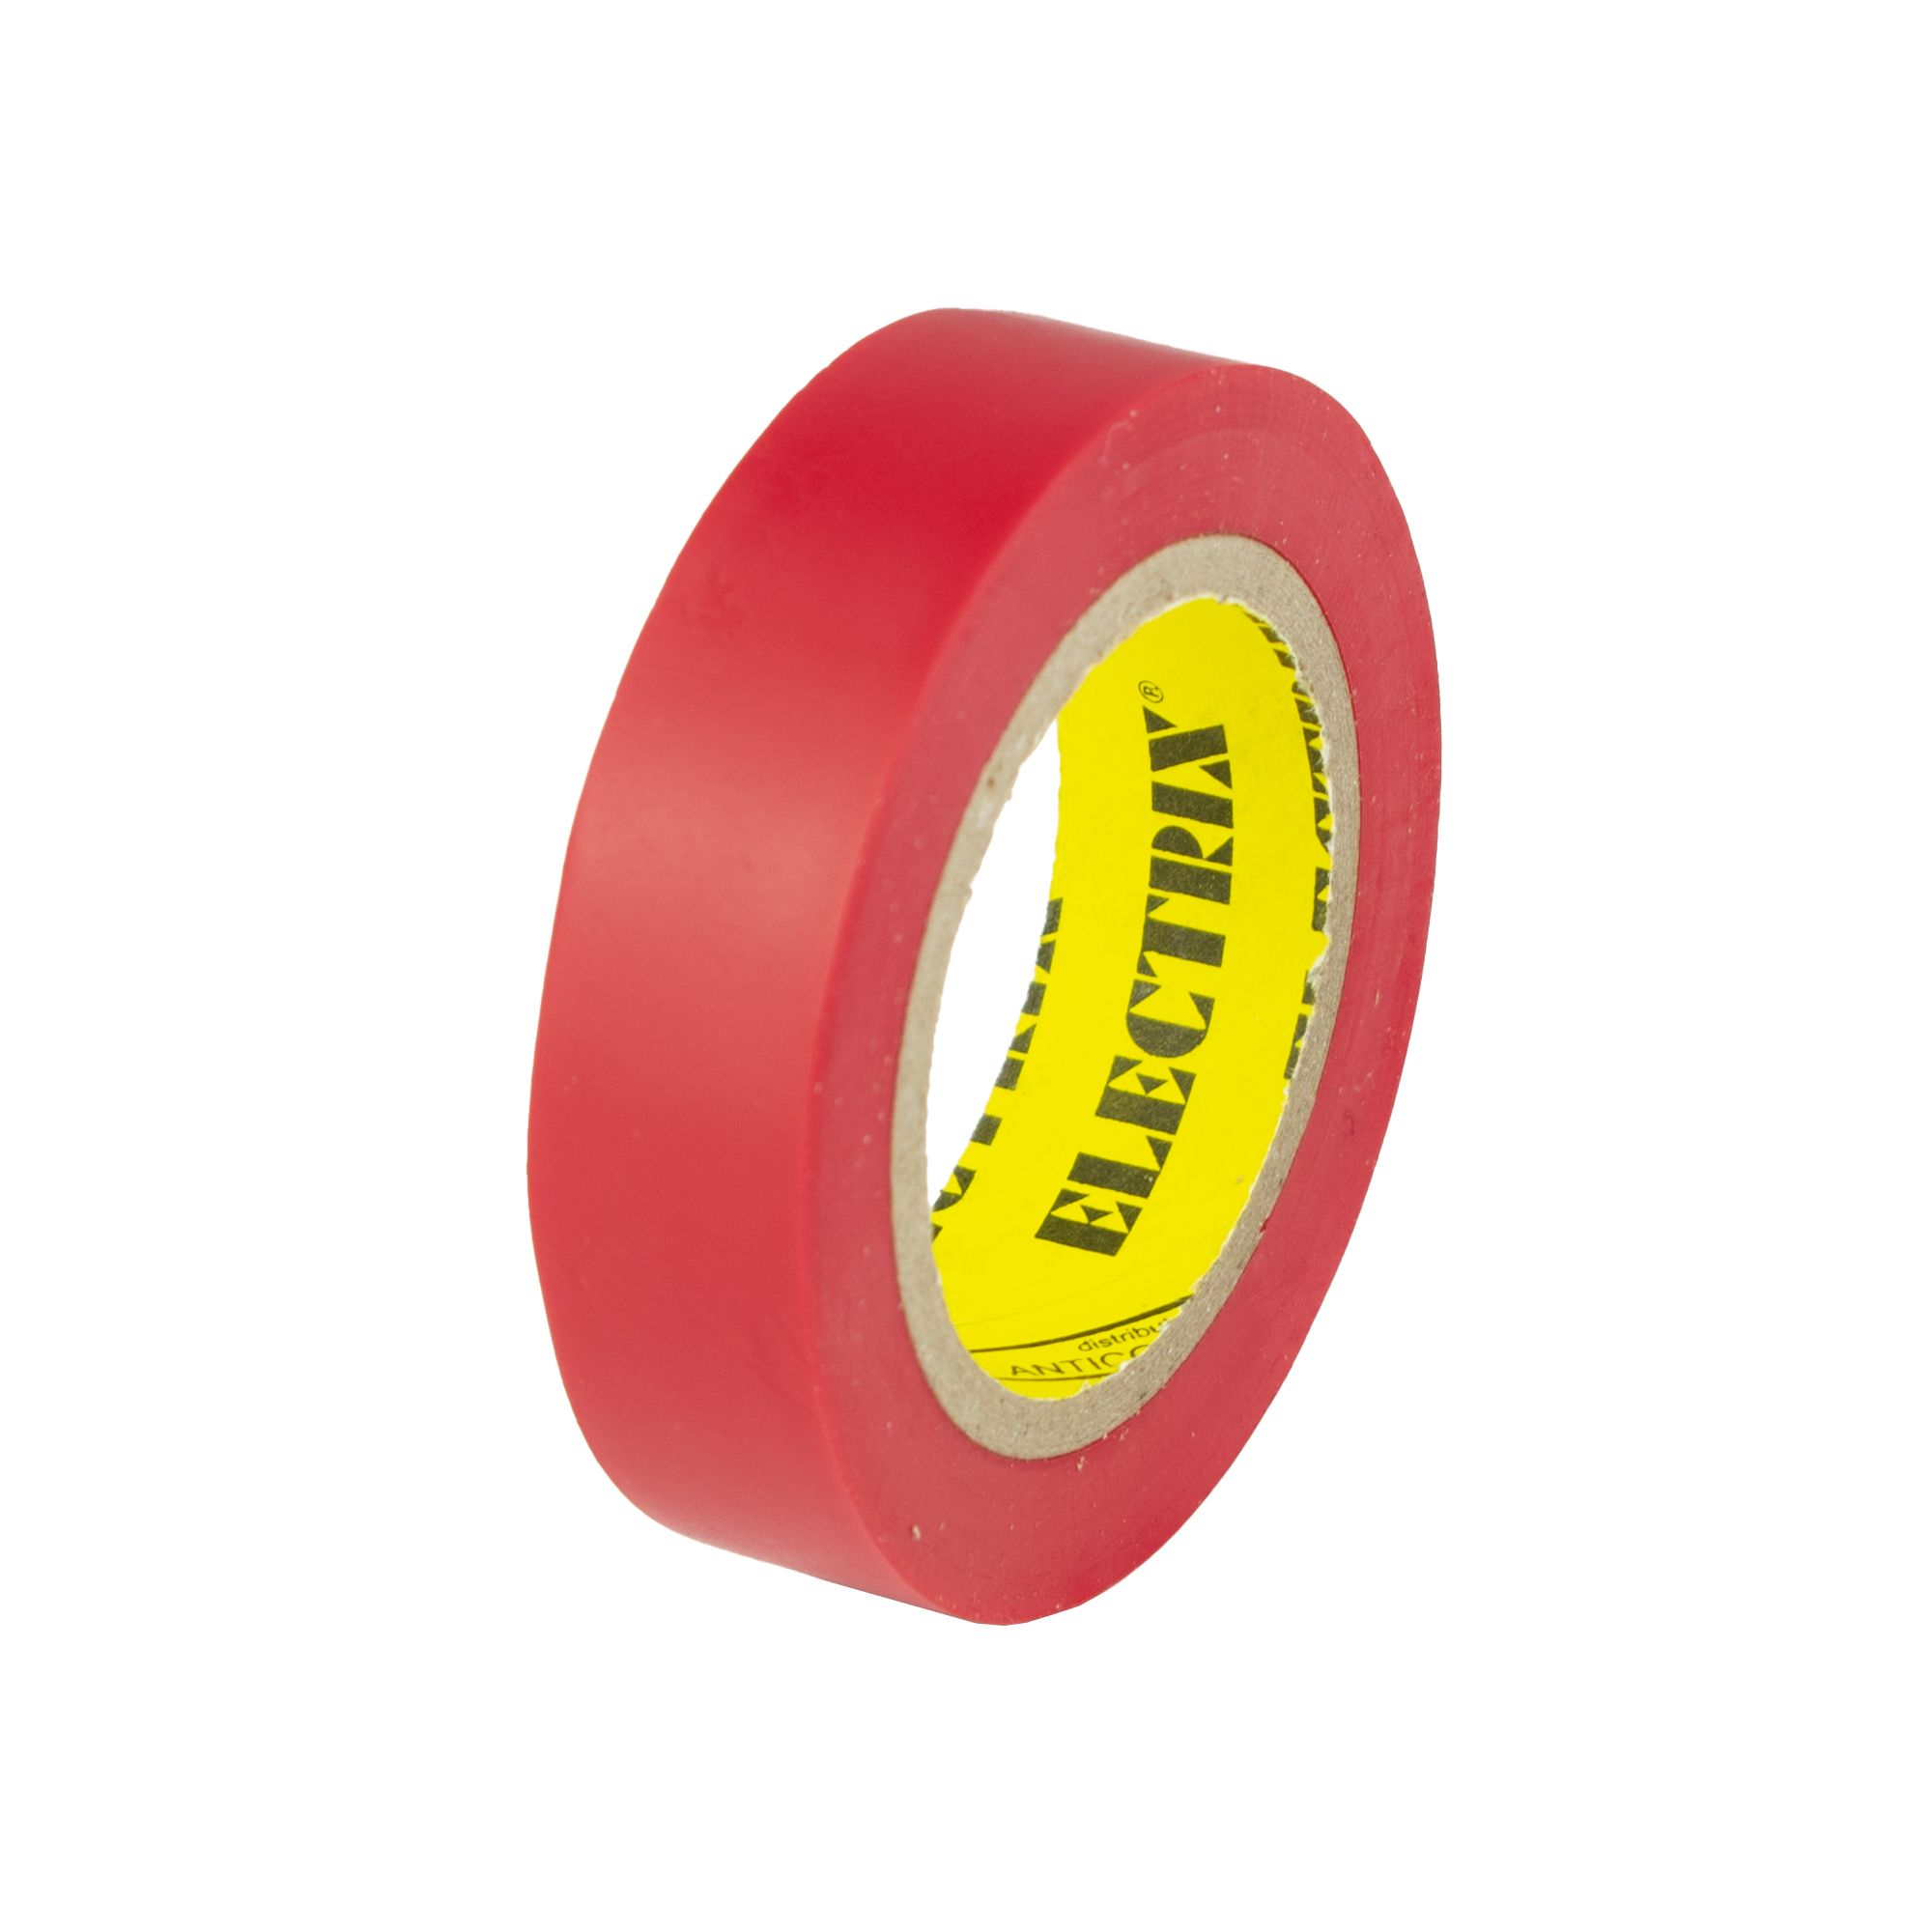 Izolační páska PVC 15mm / 10m, červená 211 0.03 Kg ŽELEZÁŽŘSTVÍ Sklad4 KB- V9512